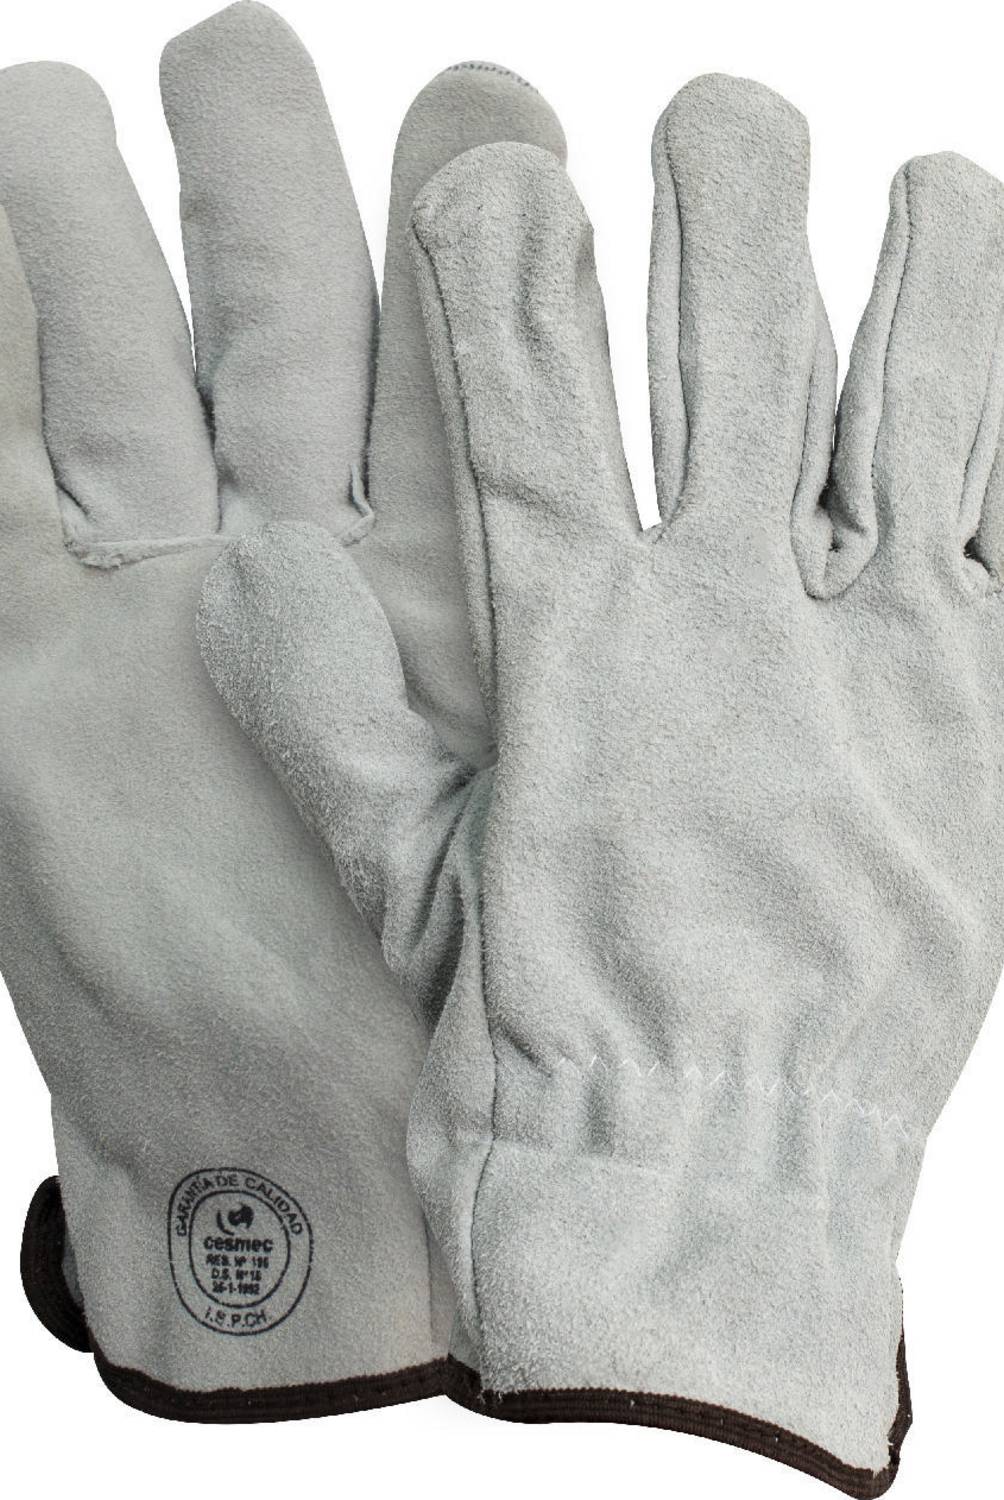 REDLINE - Pack 10 pares guantes descarne